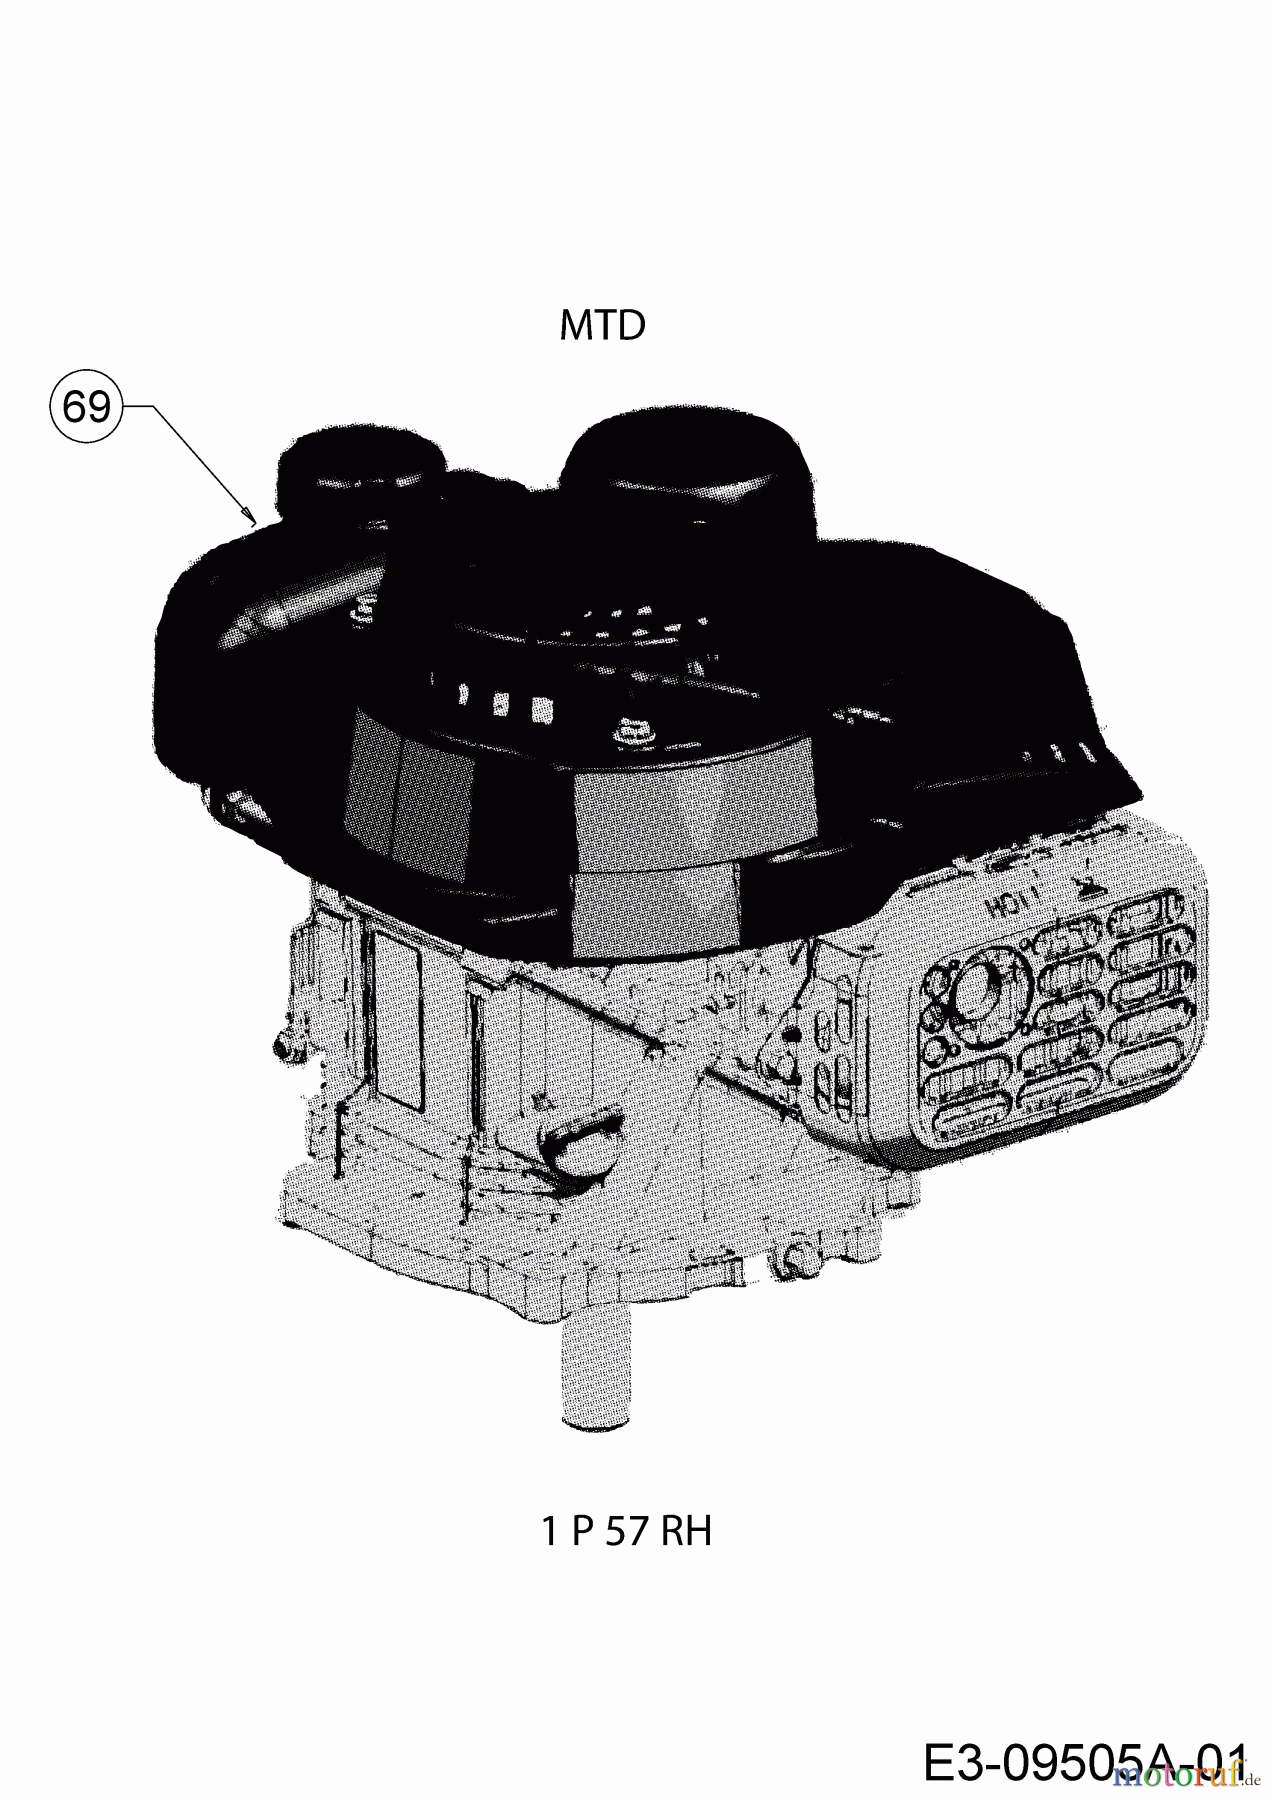  MTD Motormäher mit Antrieb Smart 42 SPO 12D-LASJ600  (2017) Motor MTD